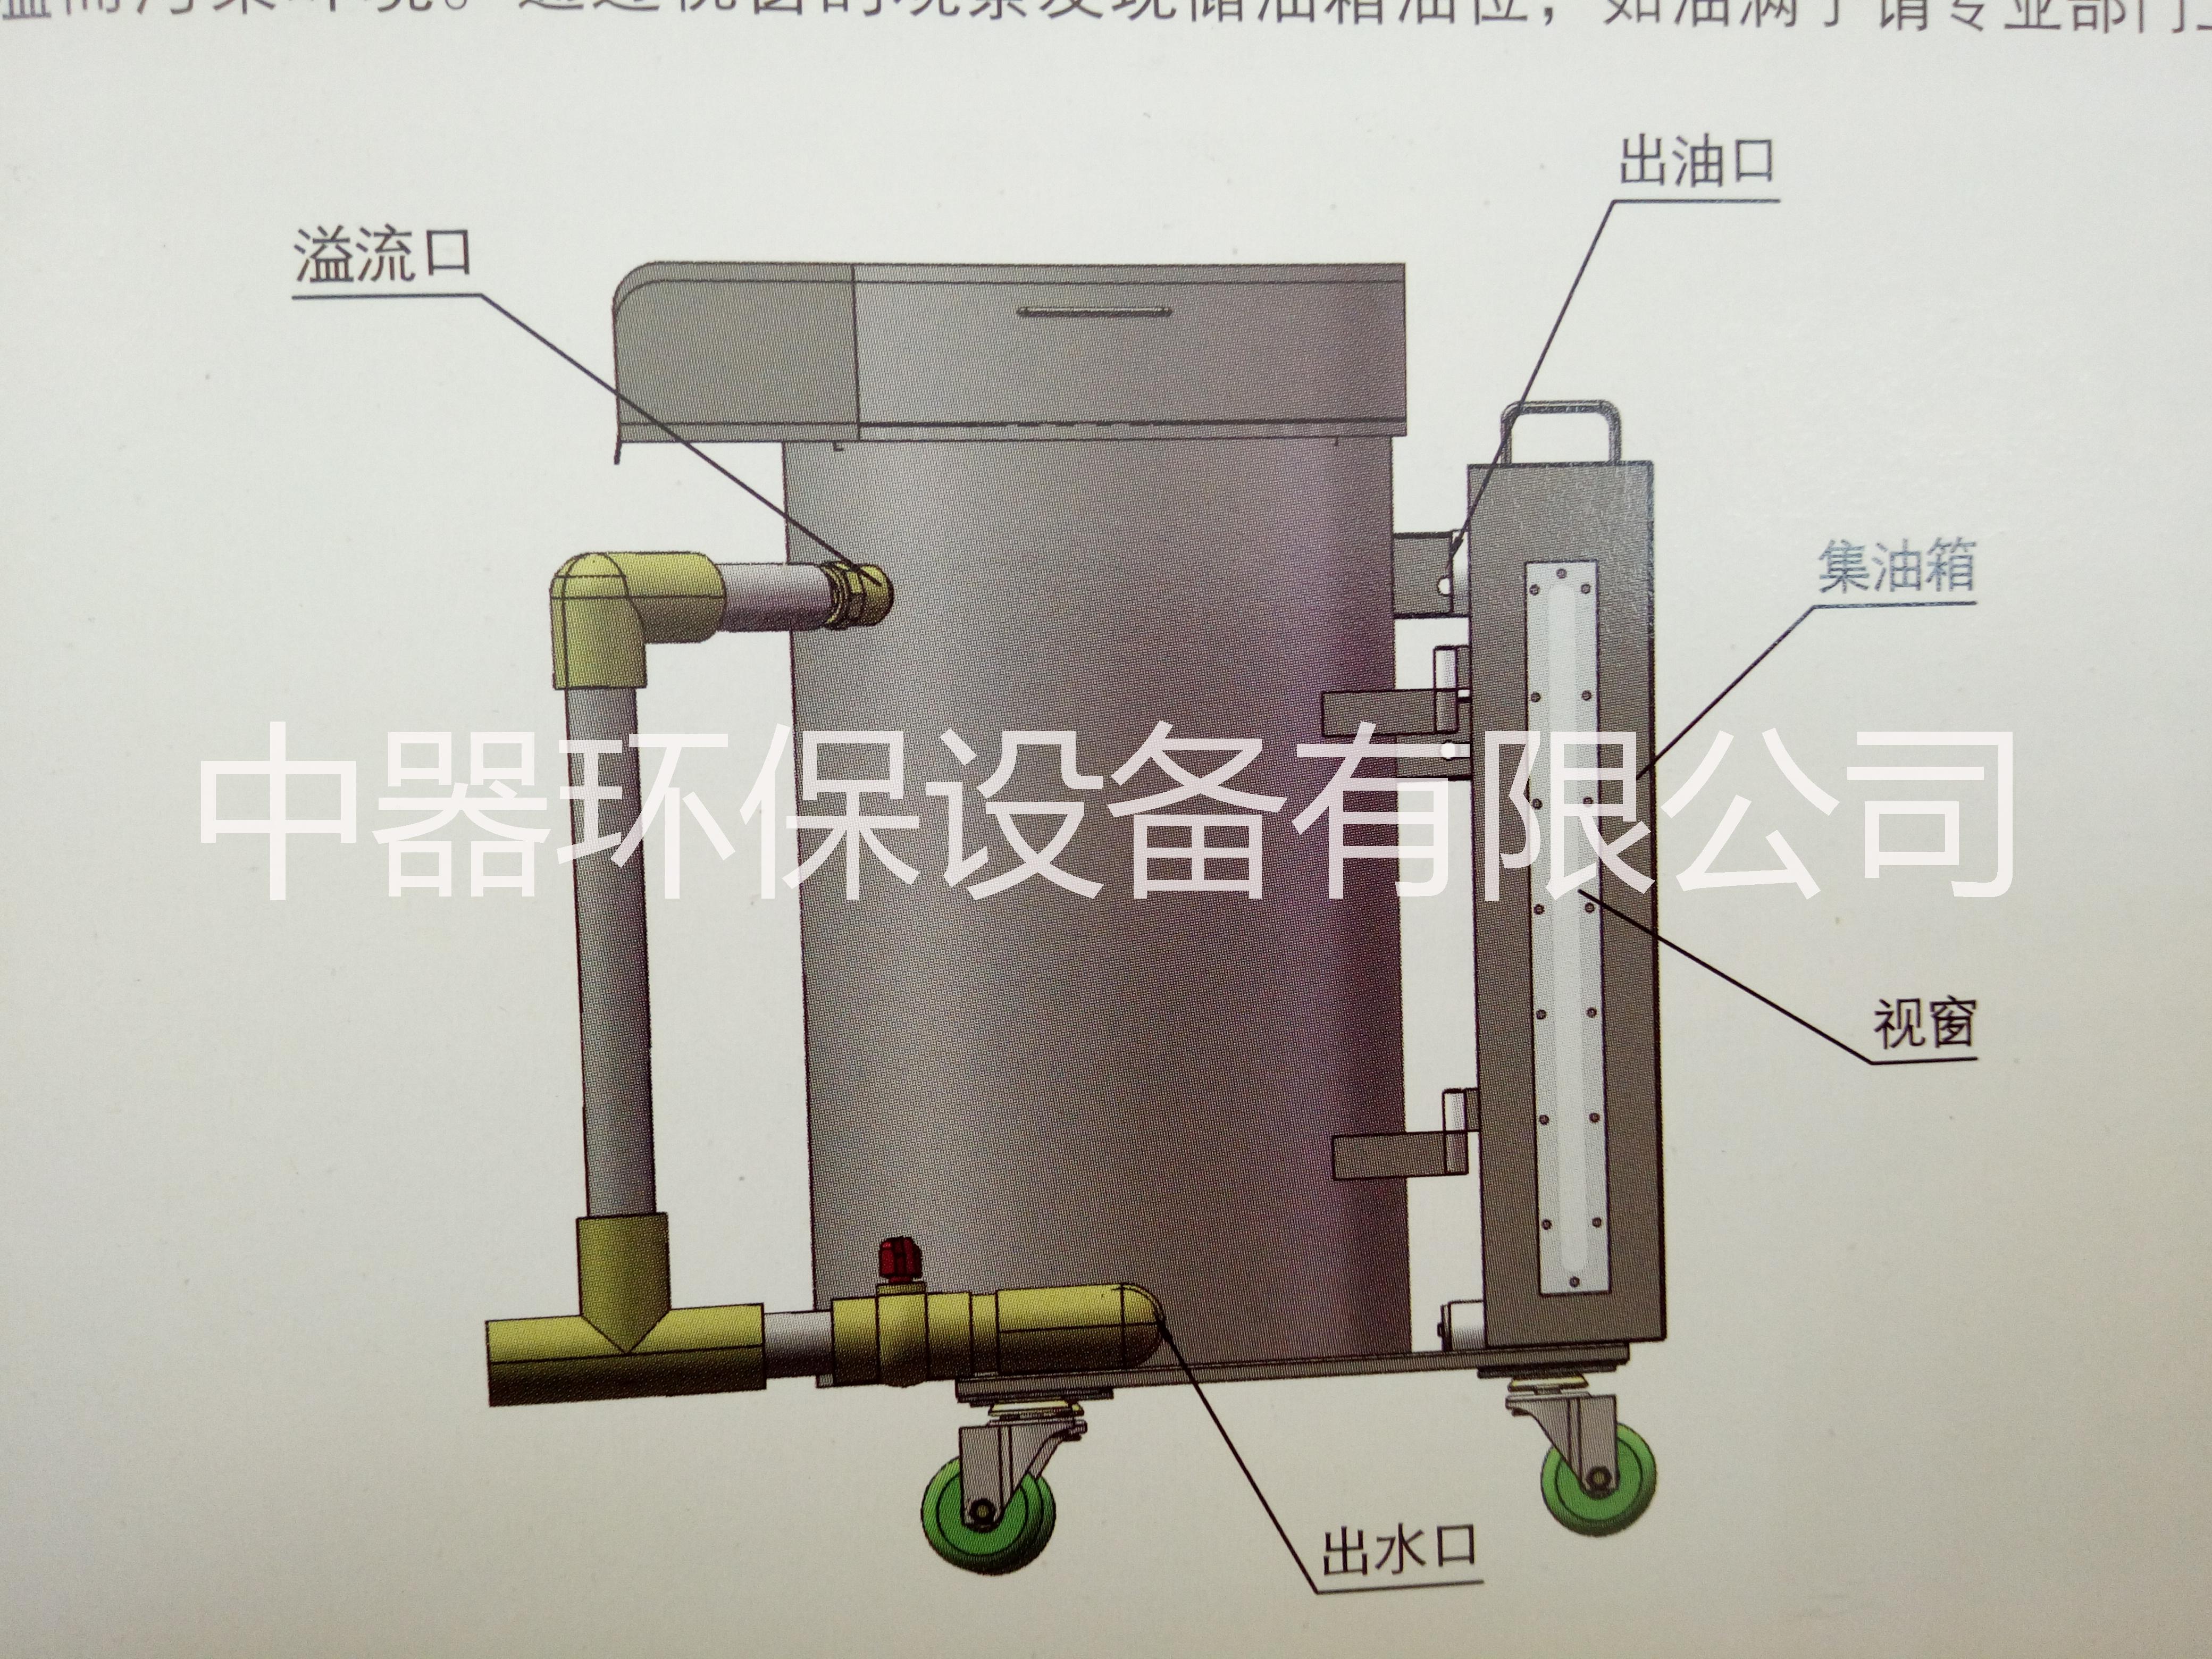 上海市上海手推车型油水分离器厂家上海手推车型油水分离器火锅店专用、可移动型、报价低